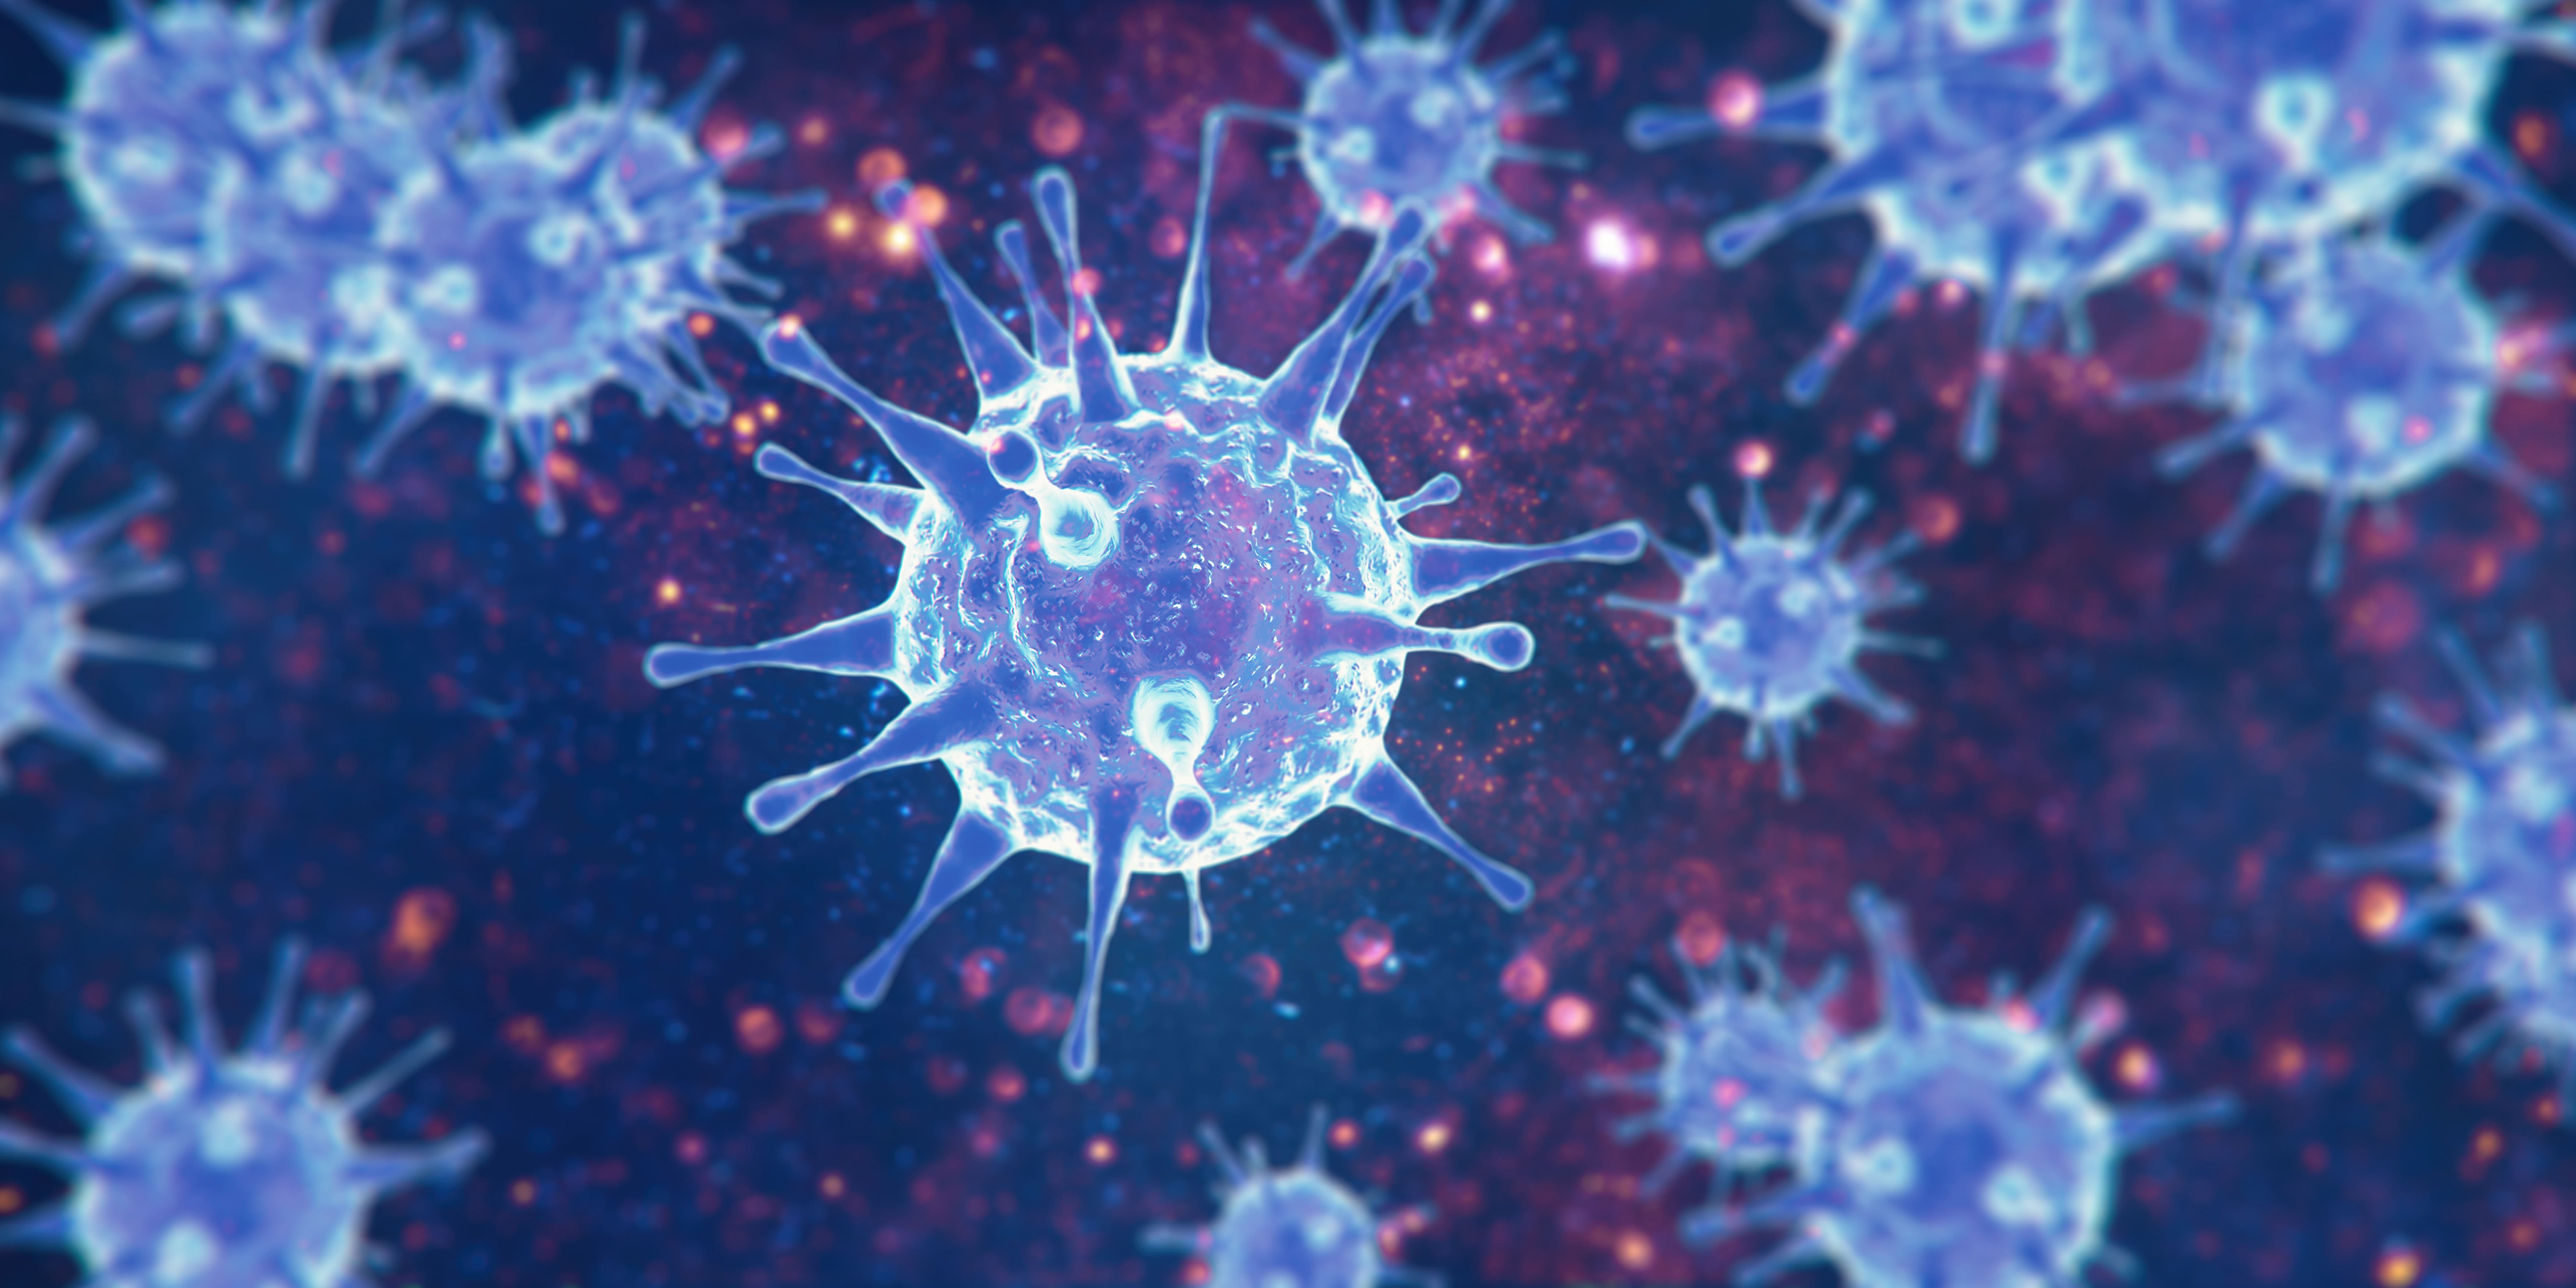 Les coronavirus regroupent de nombreux virus dont seuls certains sont pathogènes pour l'Homme, parfois mortels. © Thaut Images, Adobe Stock